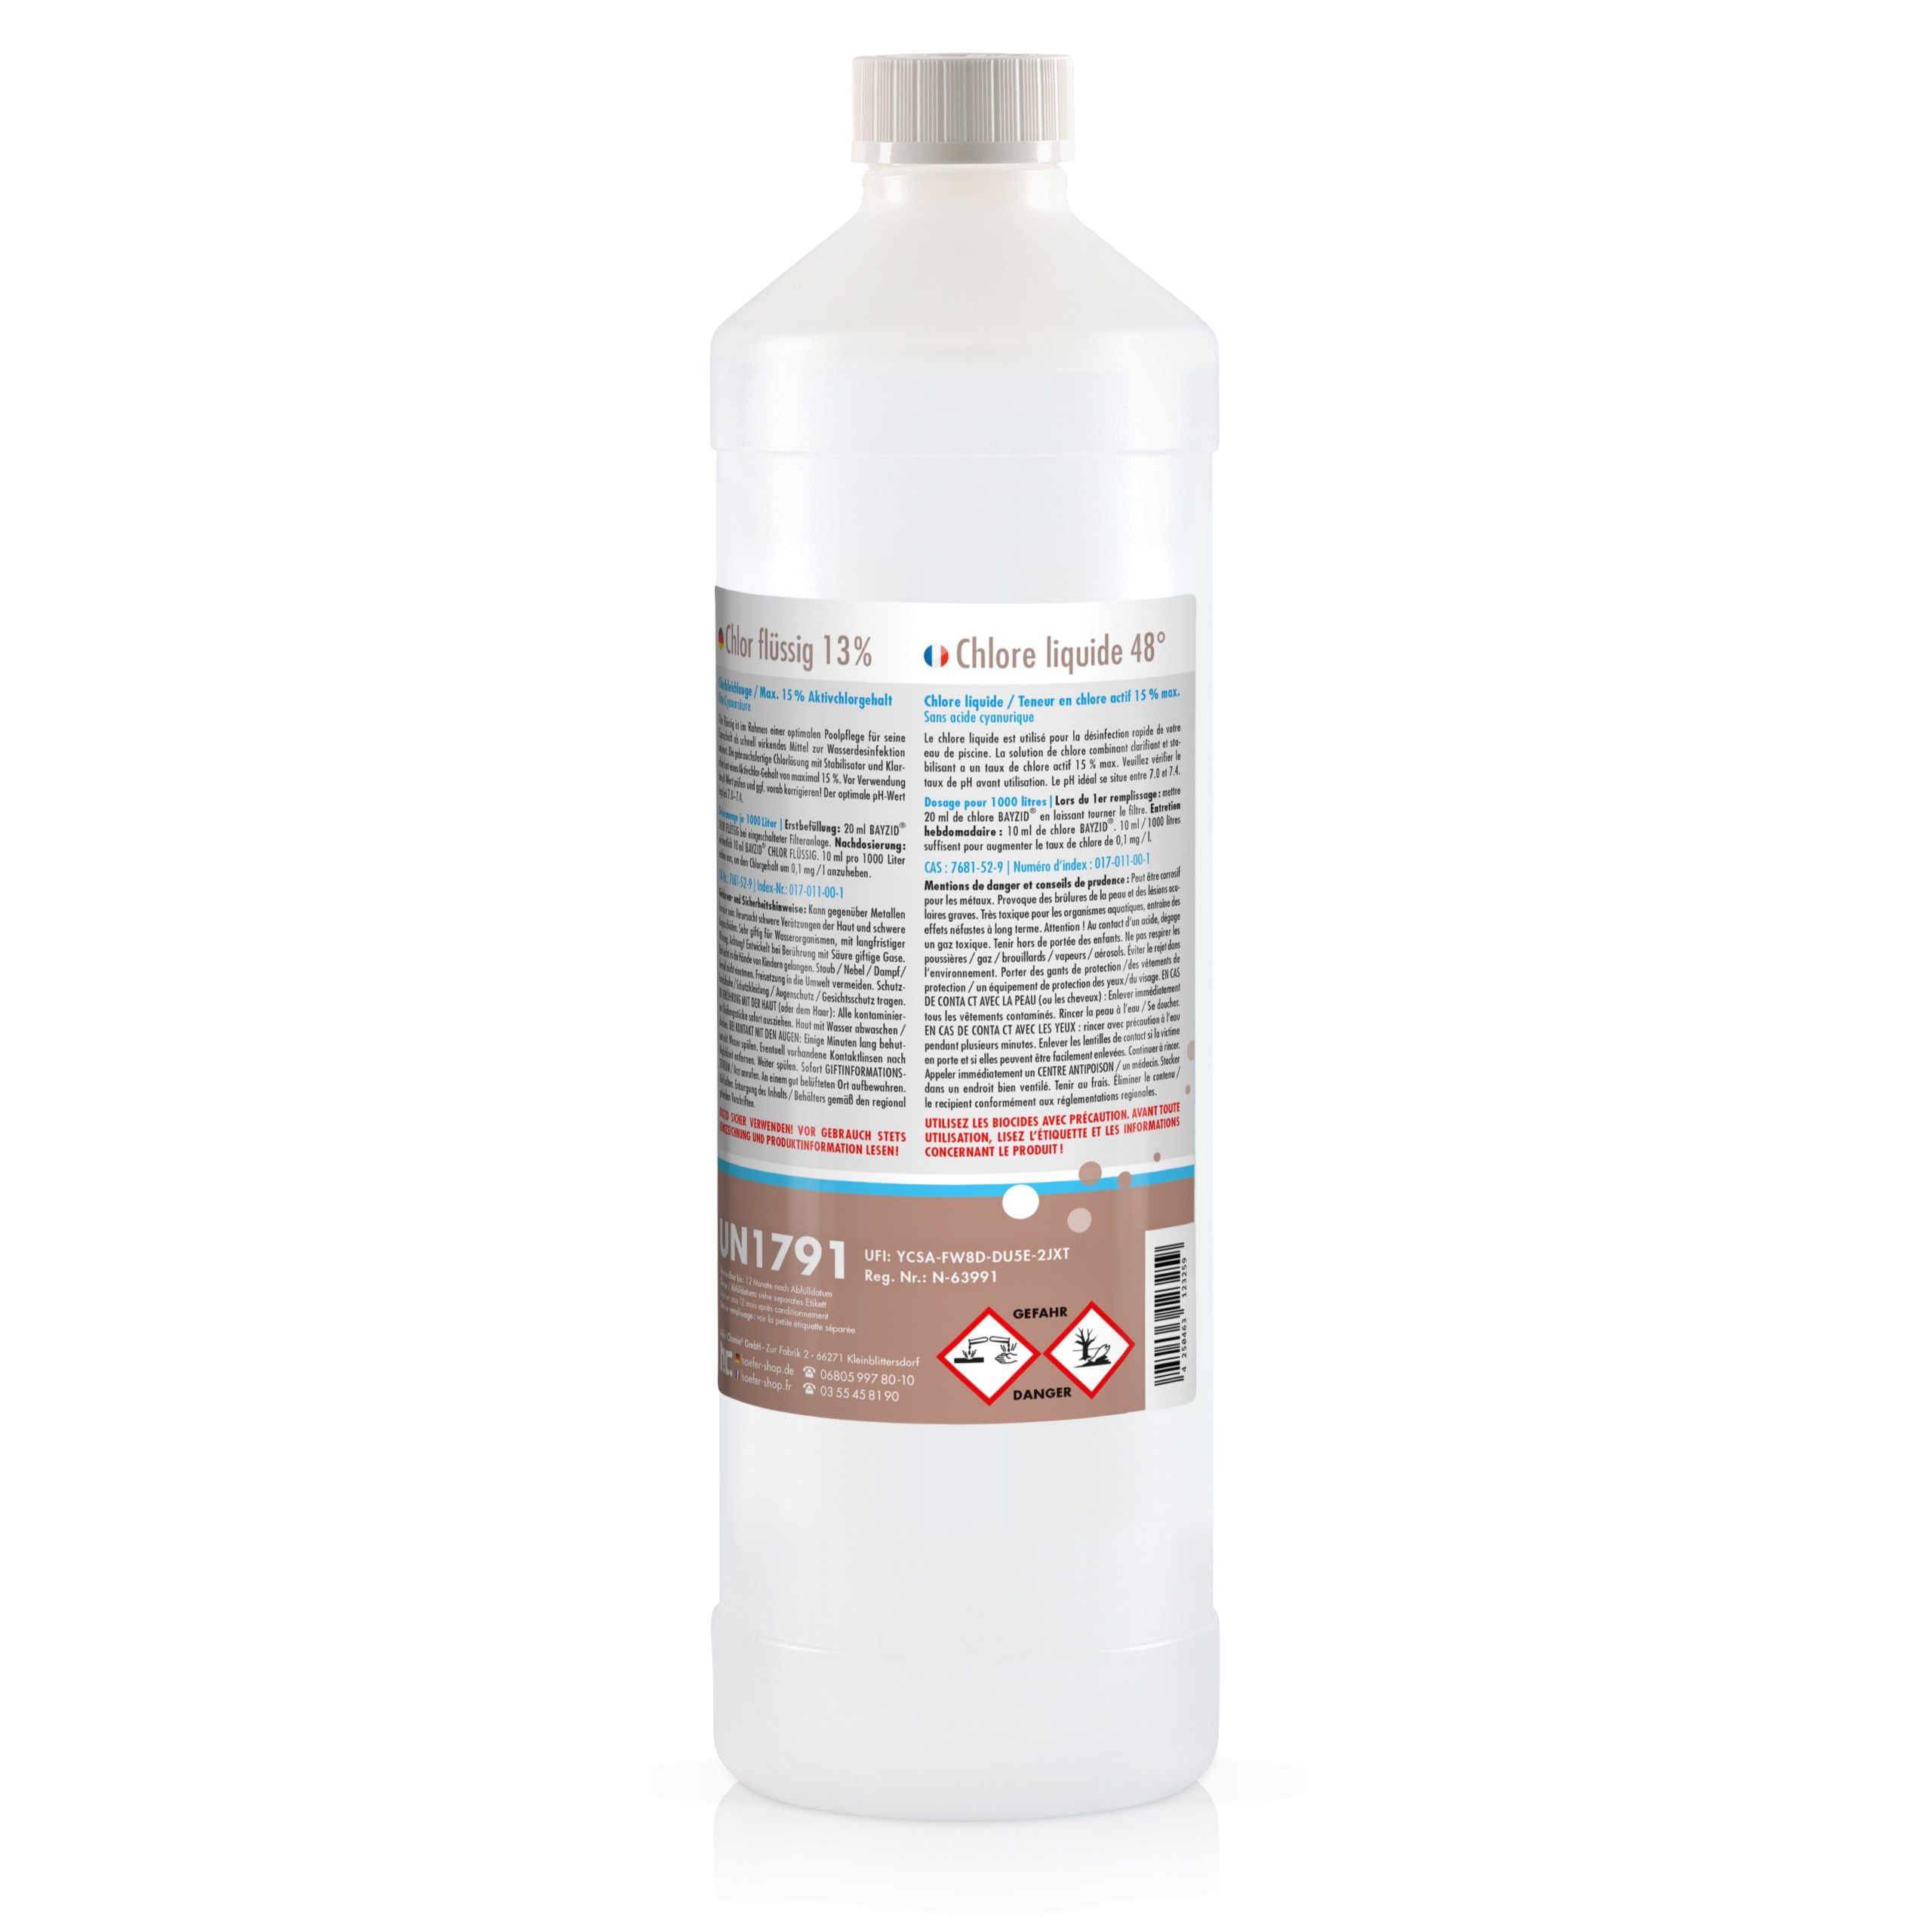 1 kg Chlore liquide BAYZID® SPA pour Spa, jacuzzis & pataugeoires